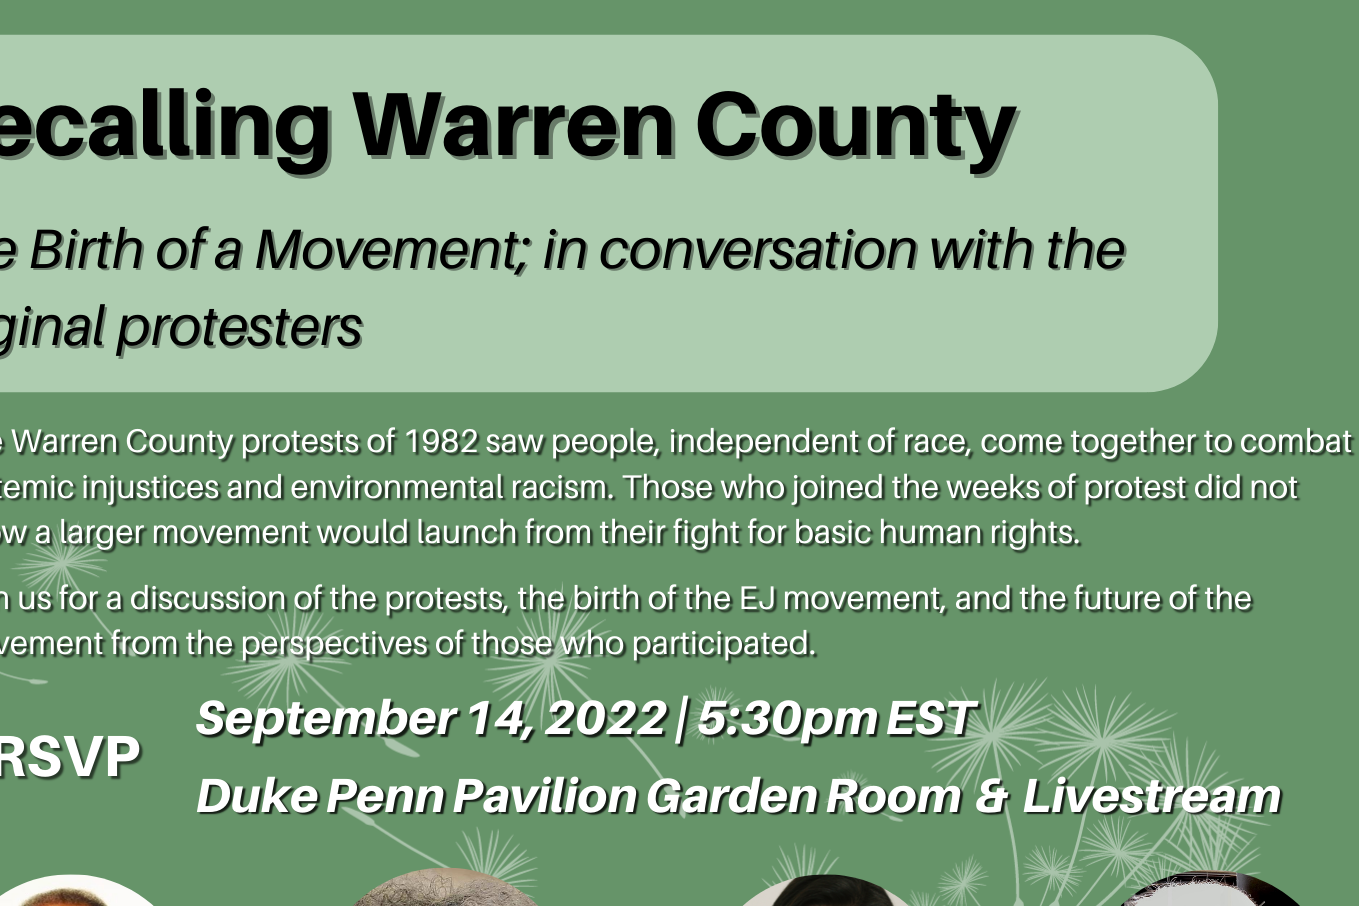 flyer for Recalling Warren County event